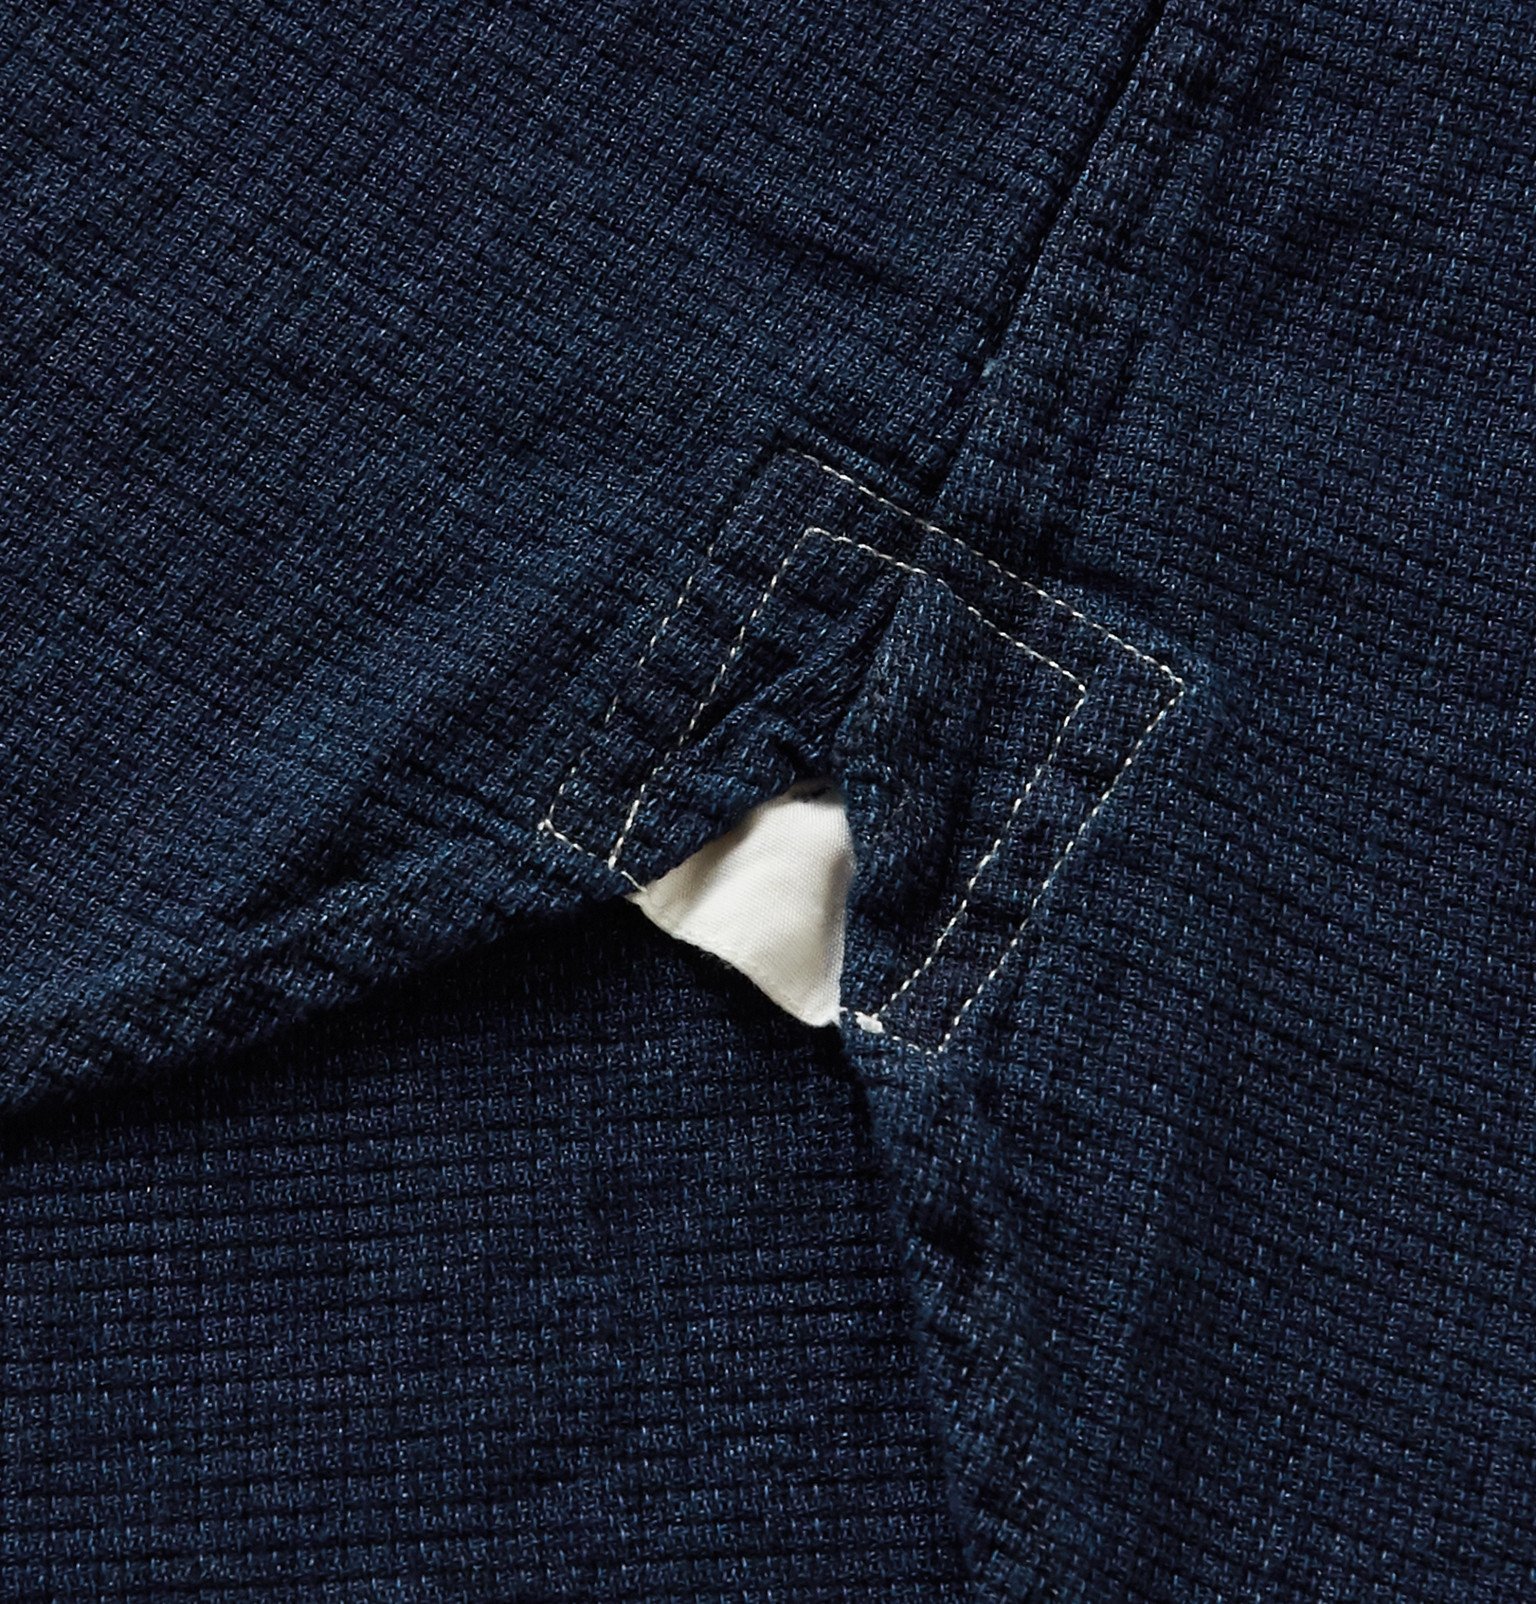 Oliver Spencer - Grandad-Collar Cotton Shirt - Blue